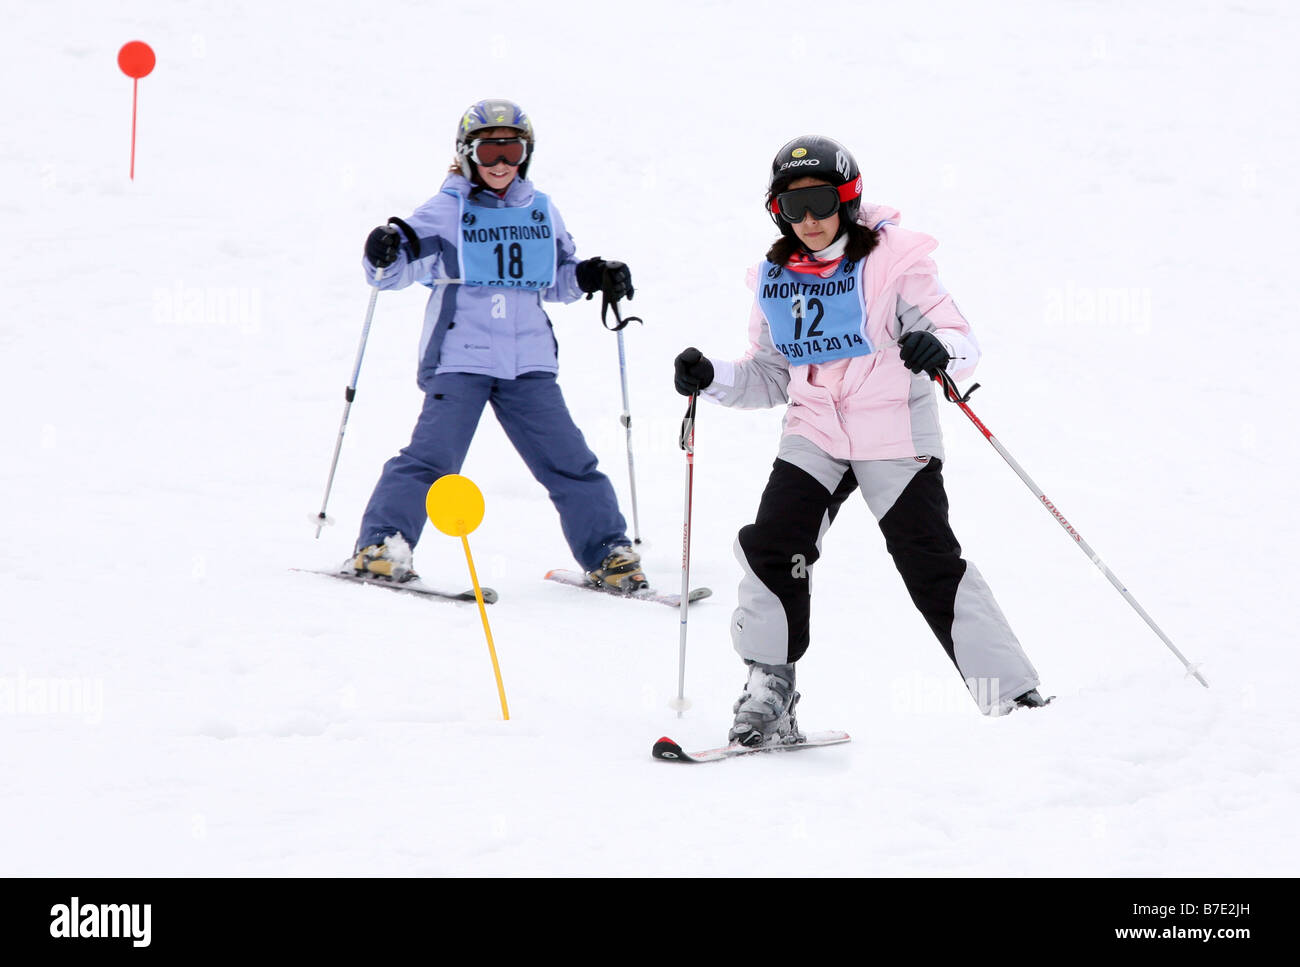 Les enfants skier; deux jeunes filles âgées de 10 ans skient sur la piste de la pépinière, Avoriaz, France Banque D'Images